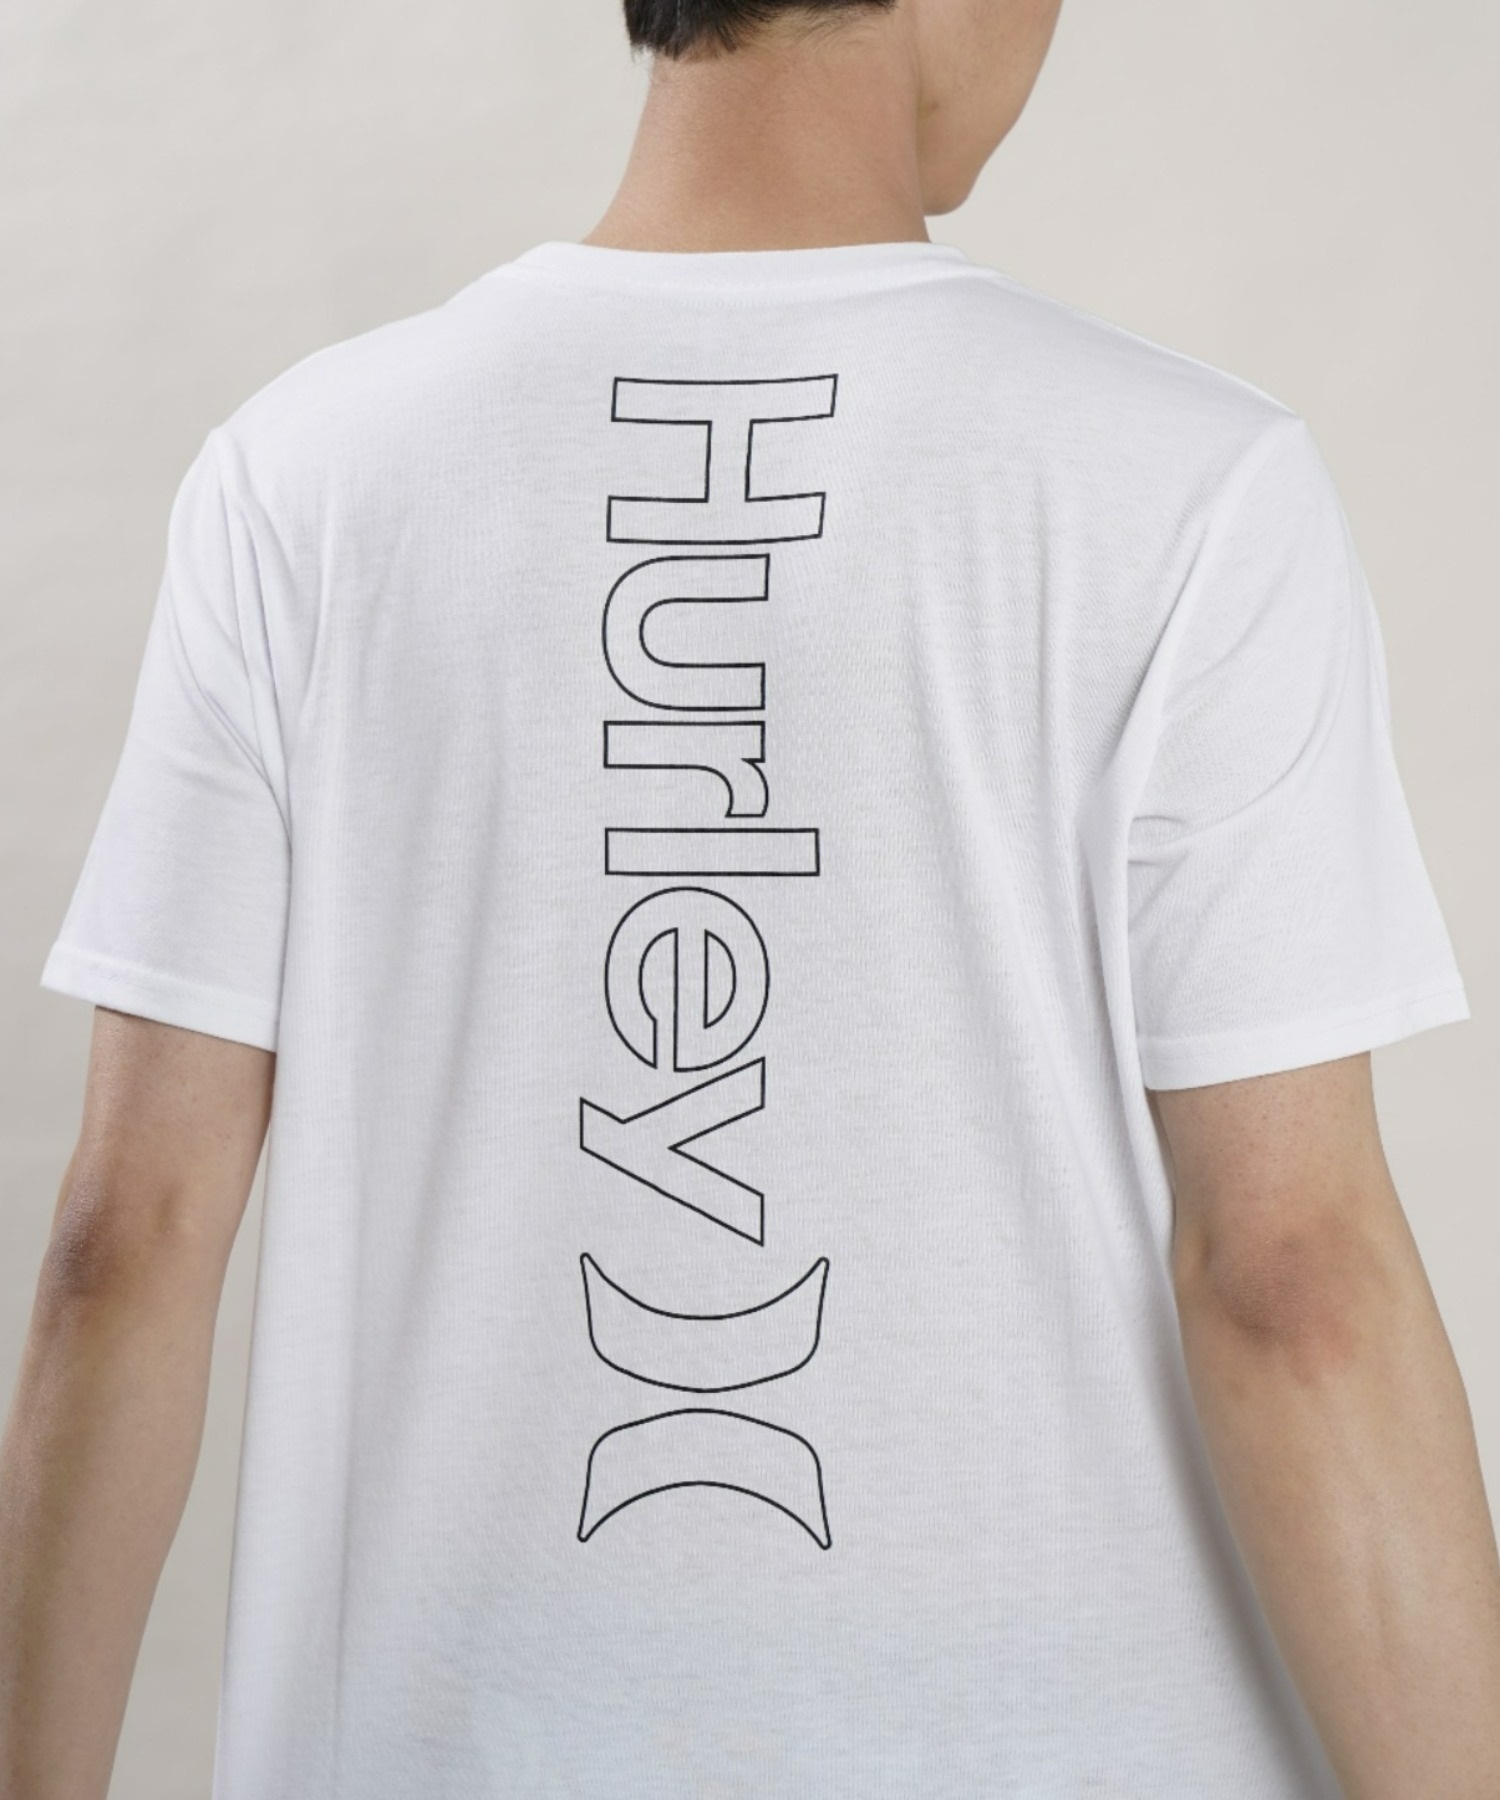 【マトメガイ対象】Hurley ハーレー MSS2200054 メンズ 半袖 Tシャツ ルーズシルエット バックプリントTシャツ ムラサキスポーツ限定(BLK-M)